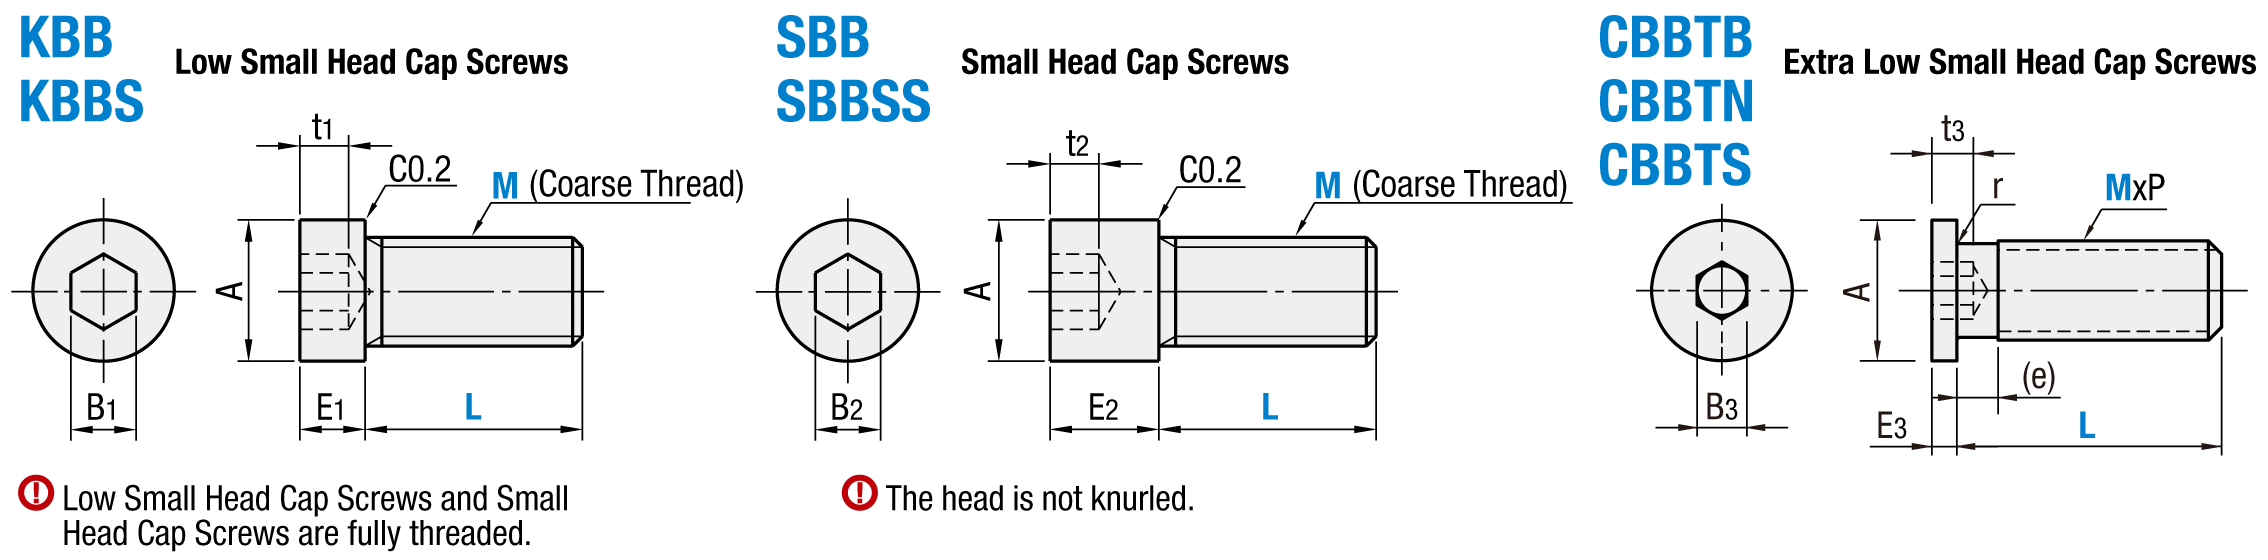 小頭/小和低頭Cap螺旋:相關圖像